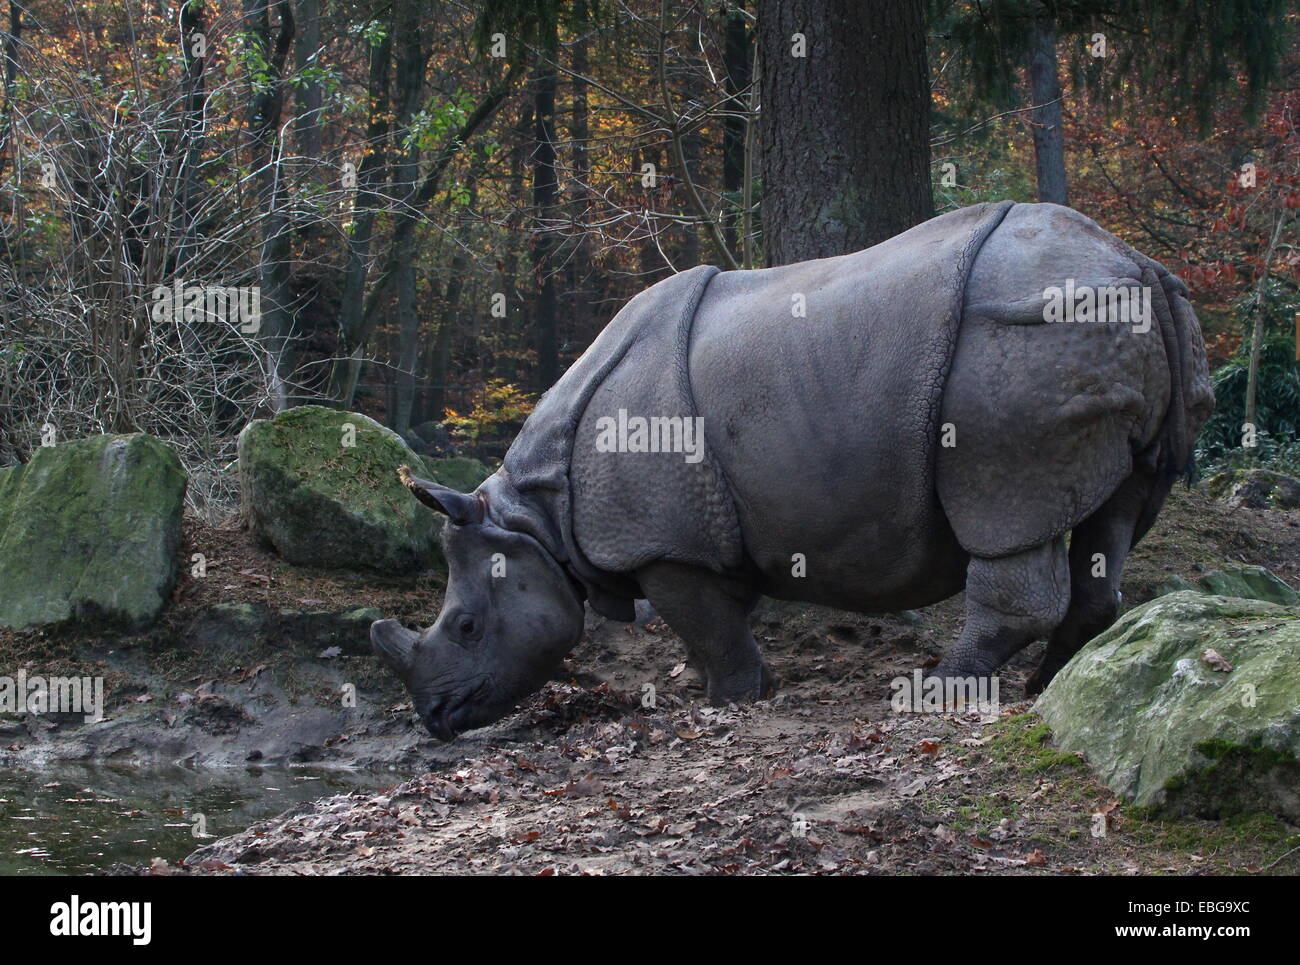 Les Indiens à une corne ( rhinocéros Rhinoceros unicornis) dans un cadre d'automne Banque D'Images